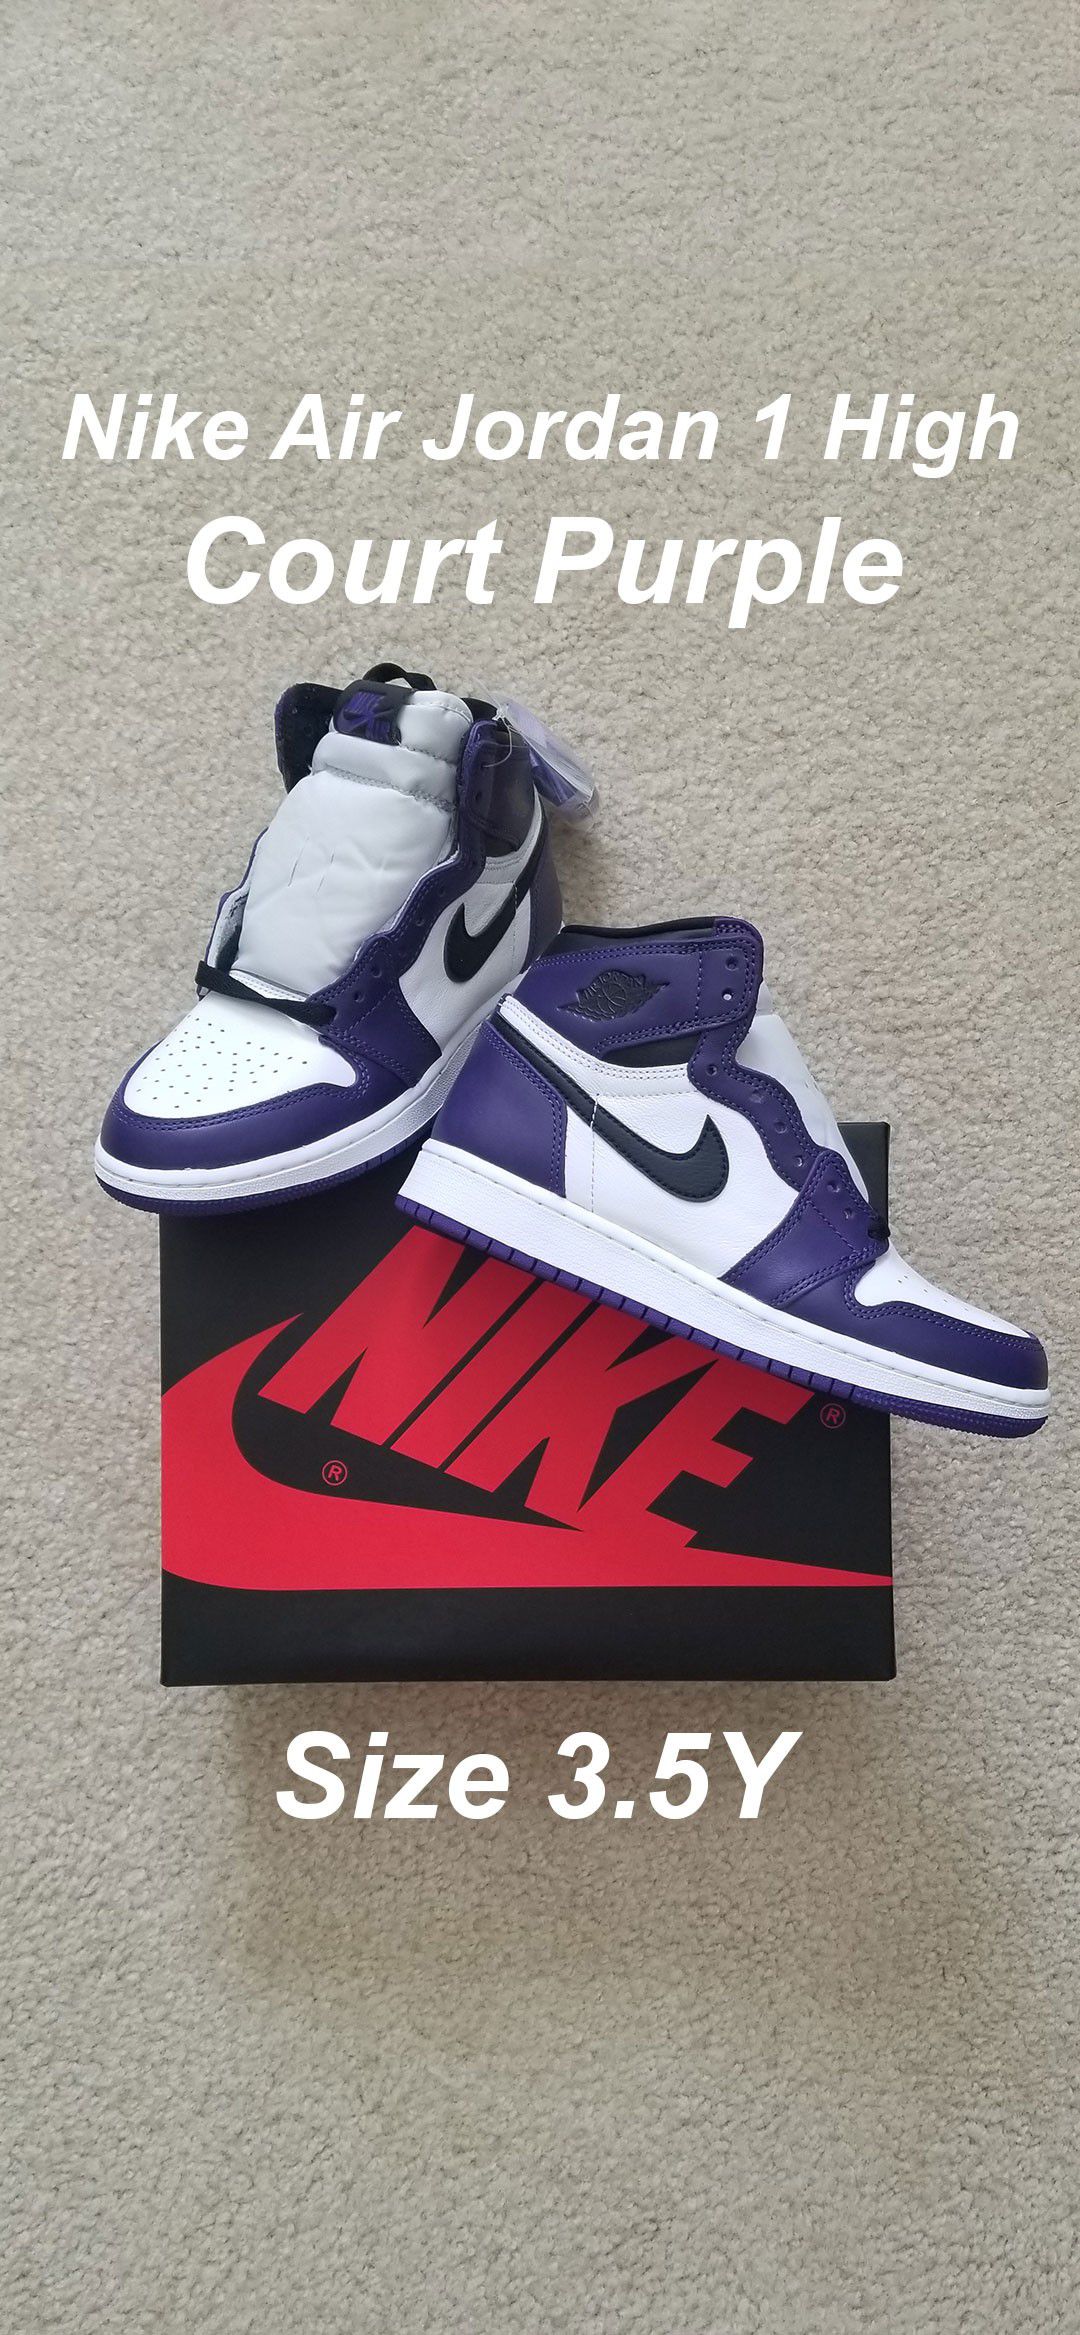 Nike Air Jordan 1 High Court Purple 3.5Y 3.5 Y